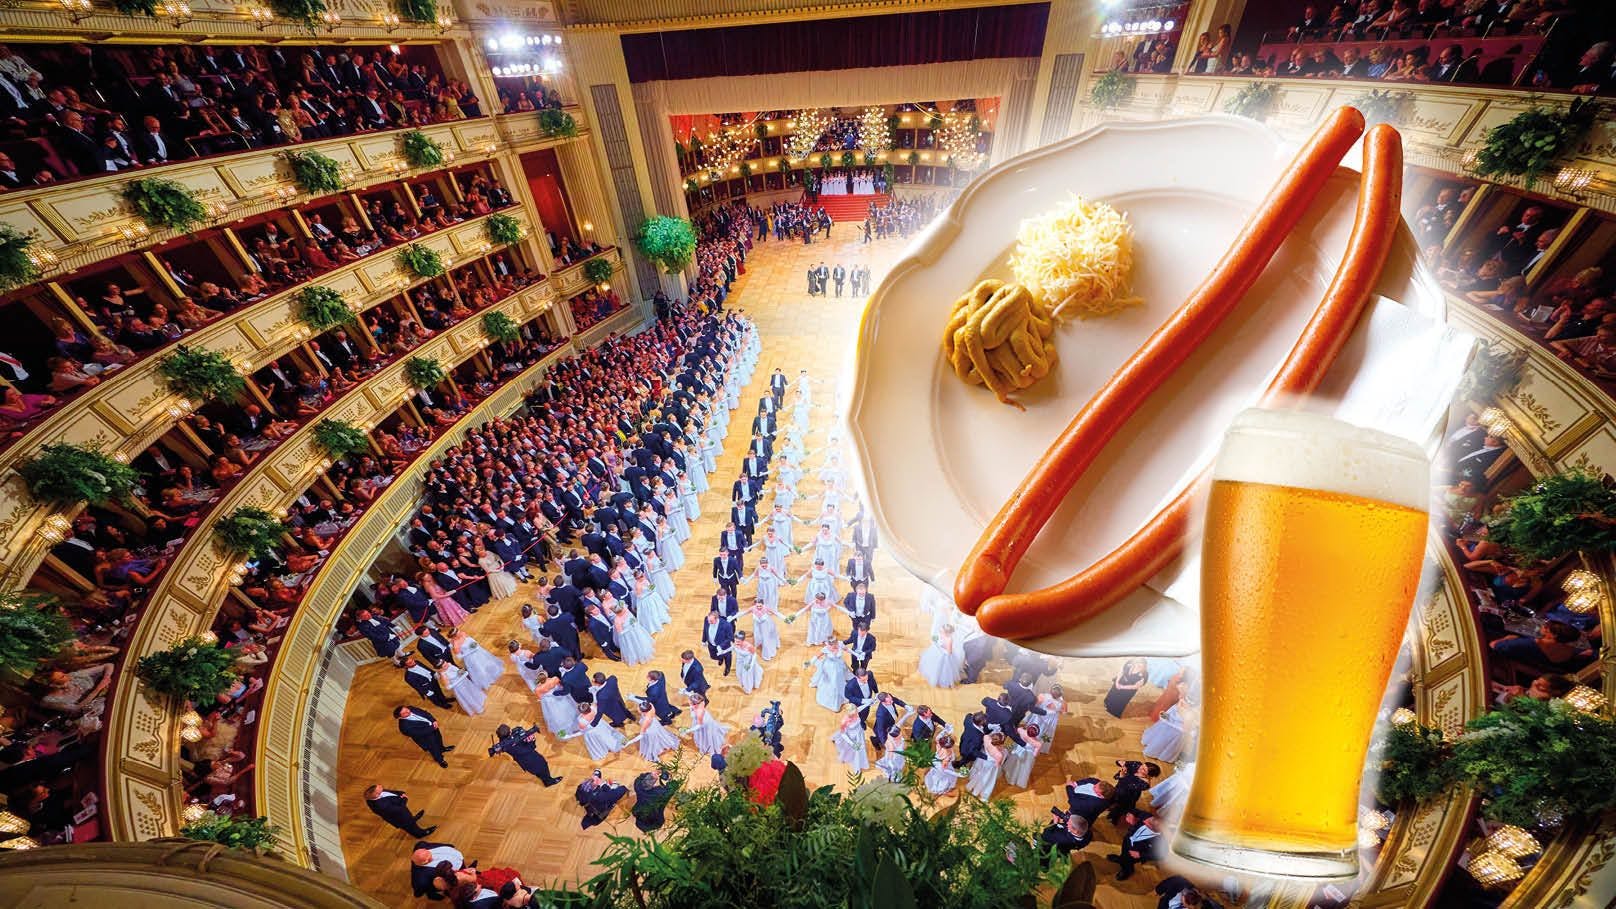 Ein kleines Bier kostet heuer am Opernball 14,50 Euro